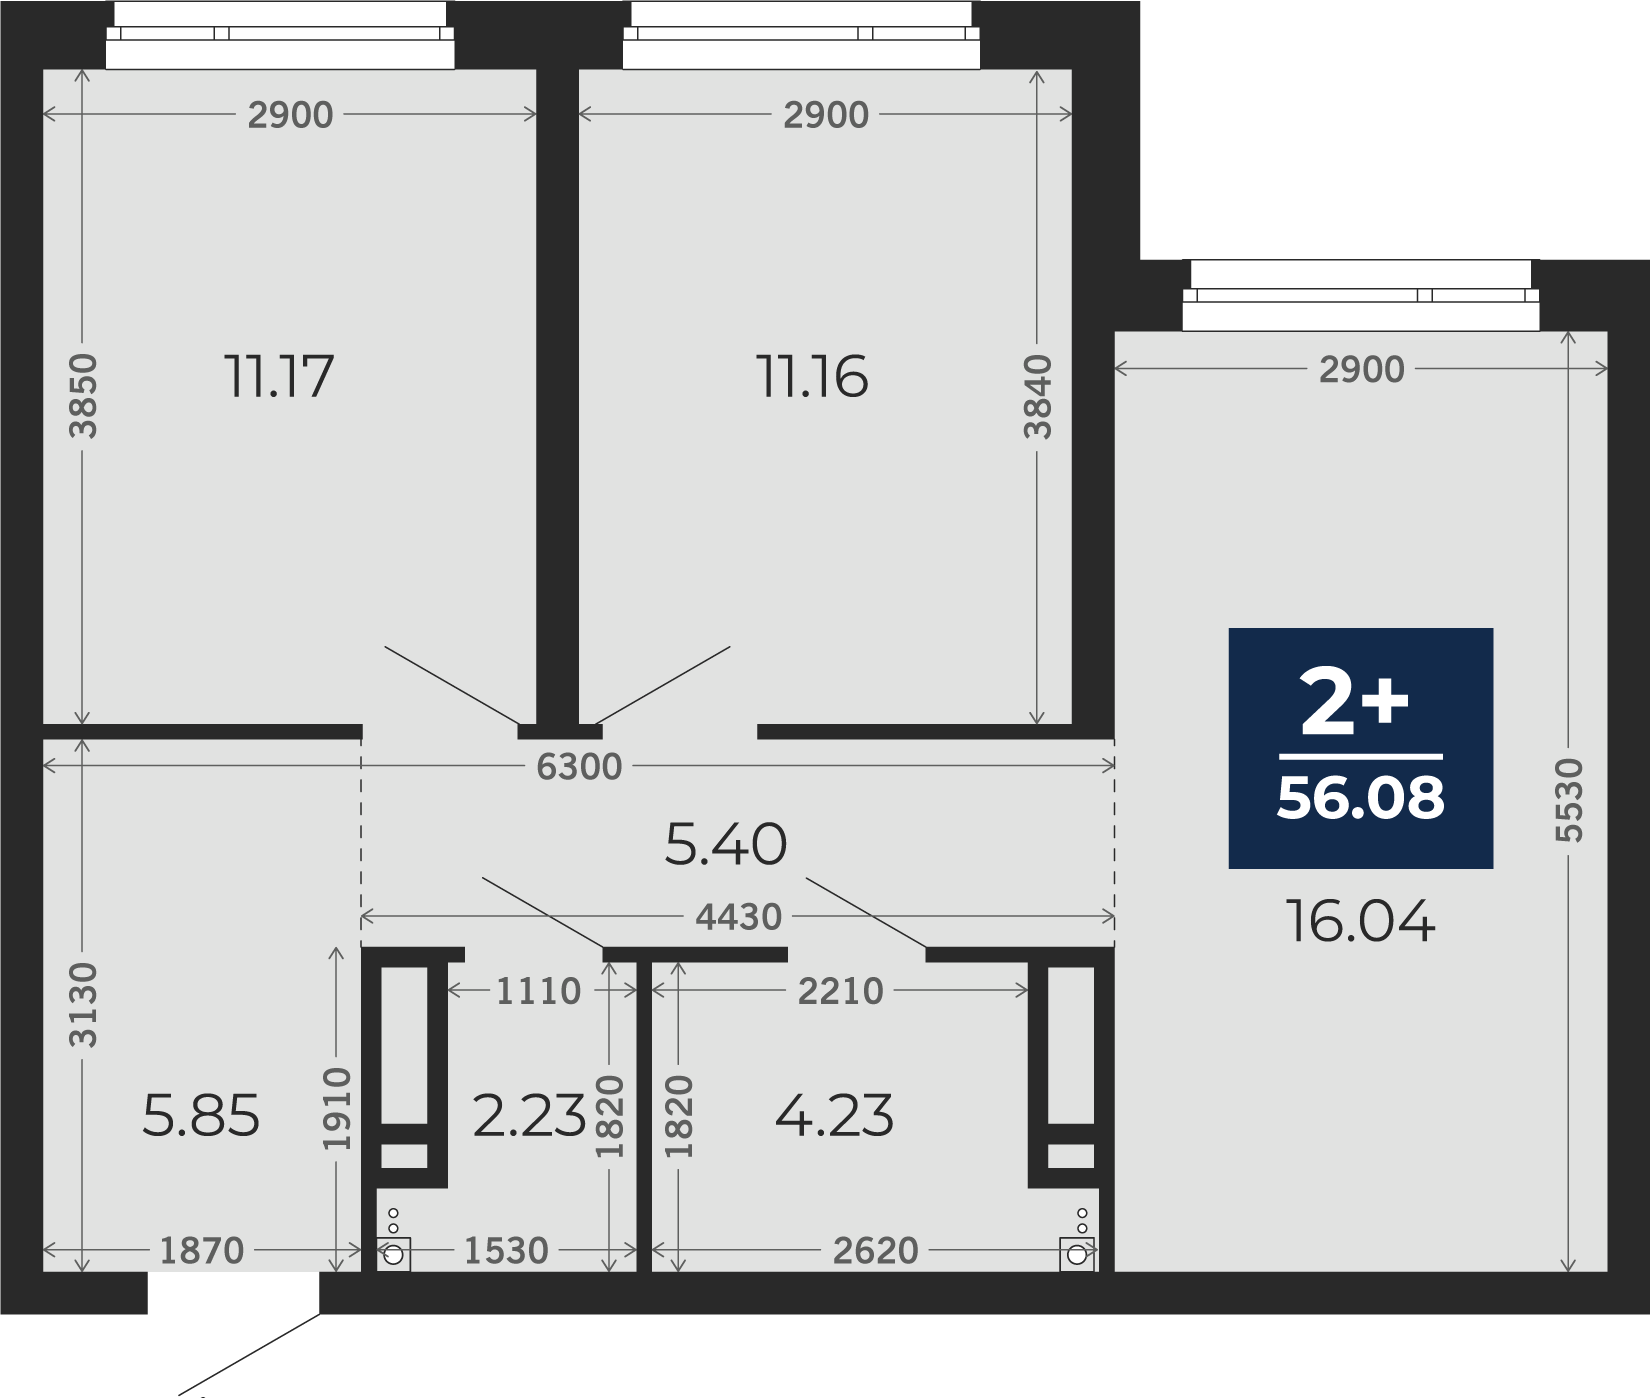 Квартира № 164, 2-комнатная, 56.08 кв. м, 6 этаж